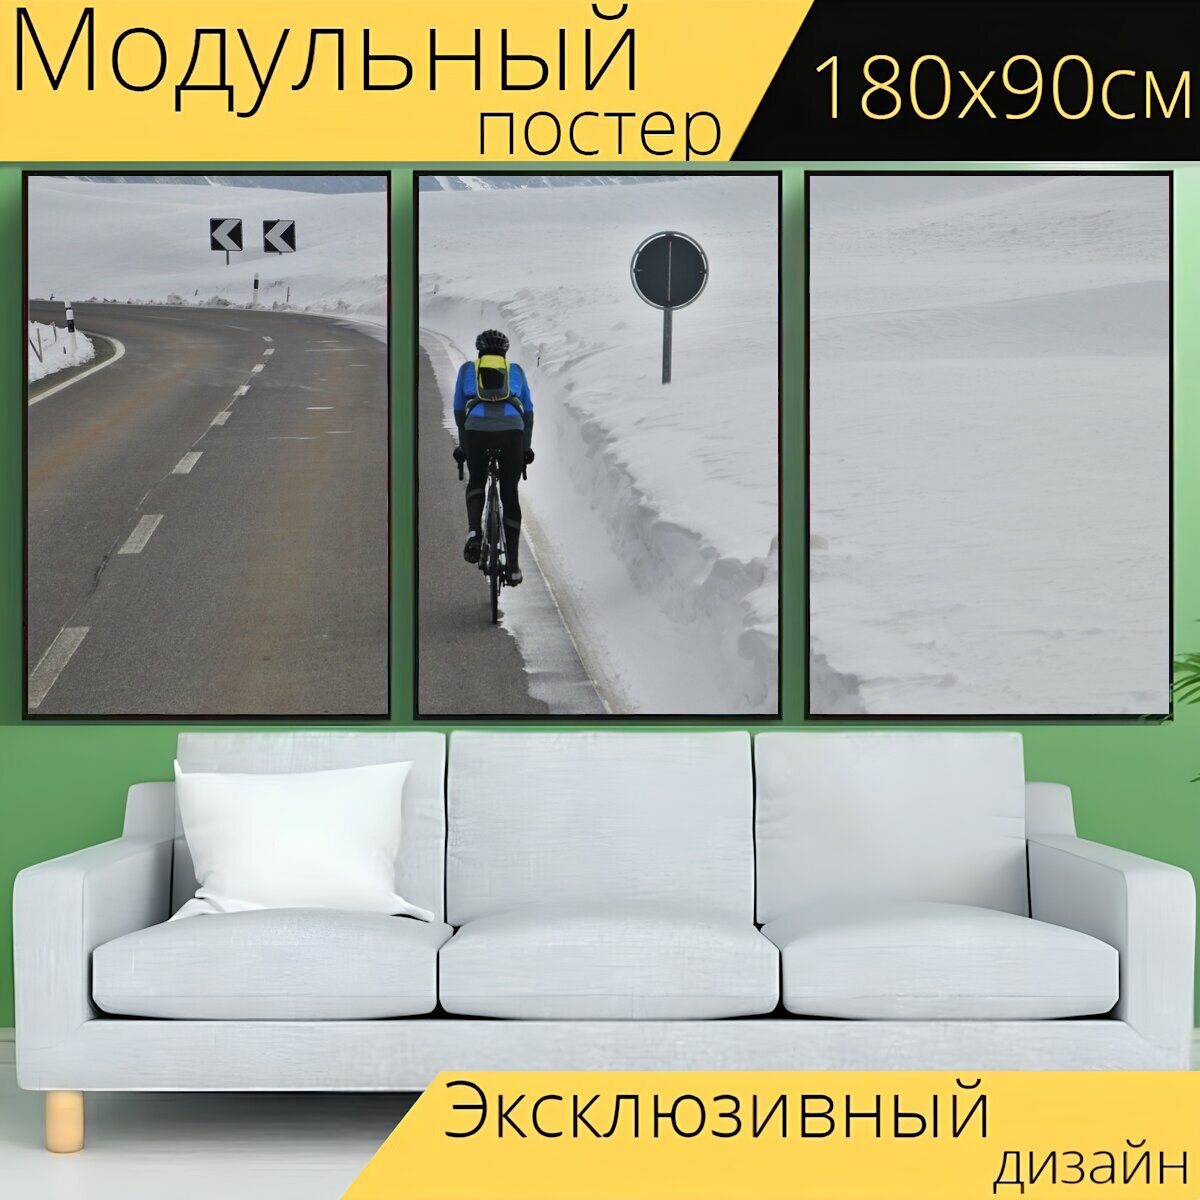 Модульный постер "Шоссе, асфальт, велосипед" 180 x 90 см. для интерьера